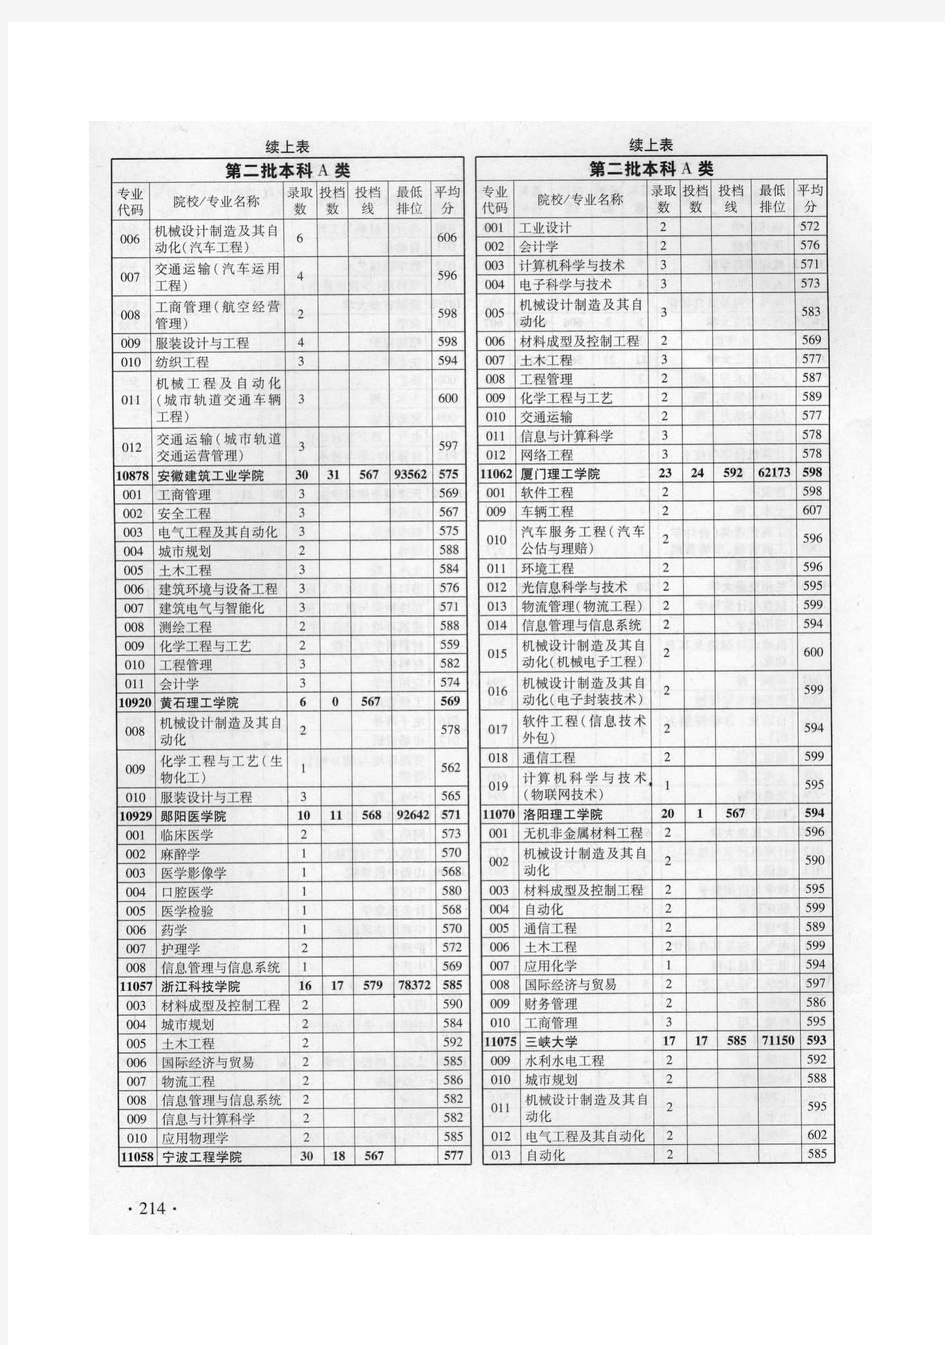 2010年理科专业分数线录取情况统计表(广东省)_部分2